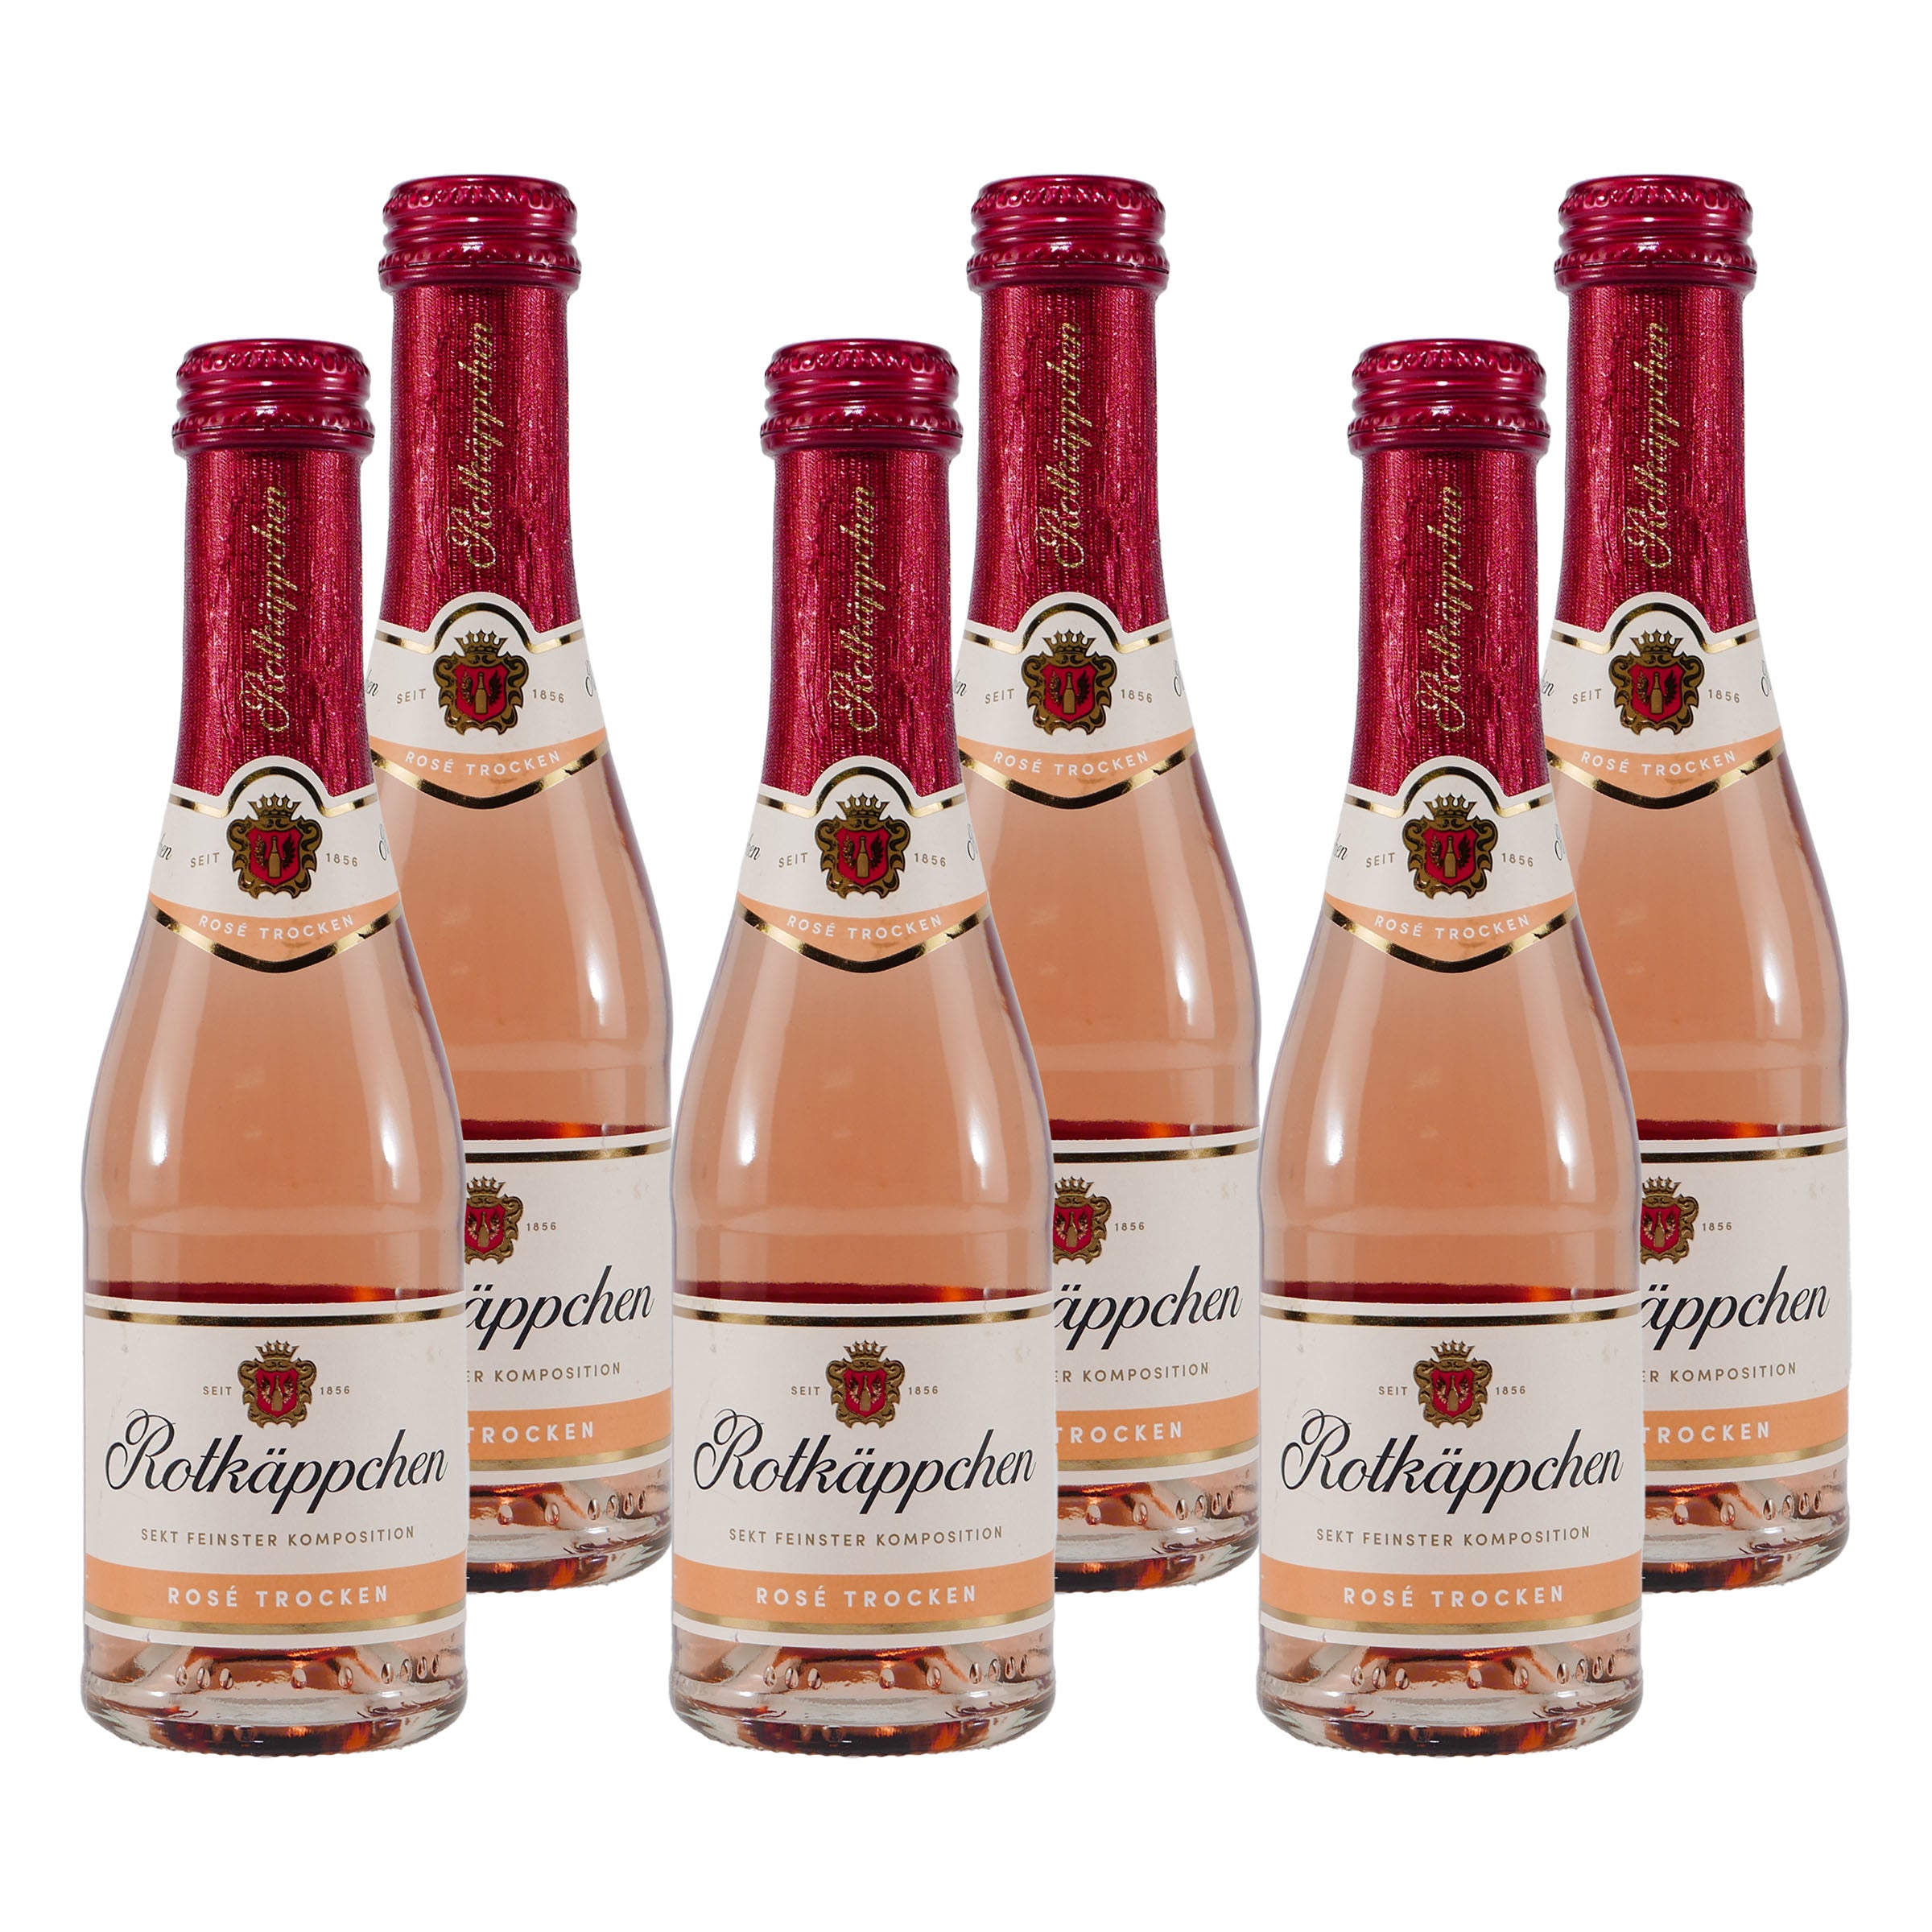 Rotkäppchen Sekt Rosé Trocken | Getränke Shop Genuss - & praktischer Fruchtiger Gute-Freunde Online Flaschengröße Spirituosen 0,2L in